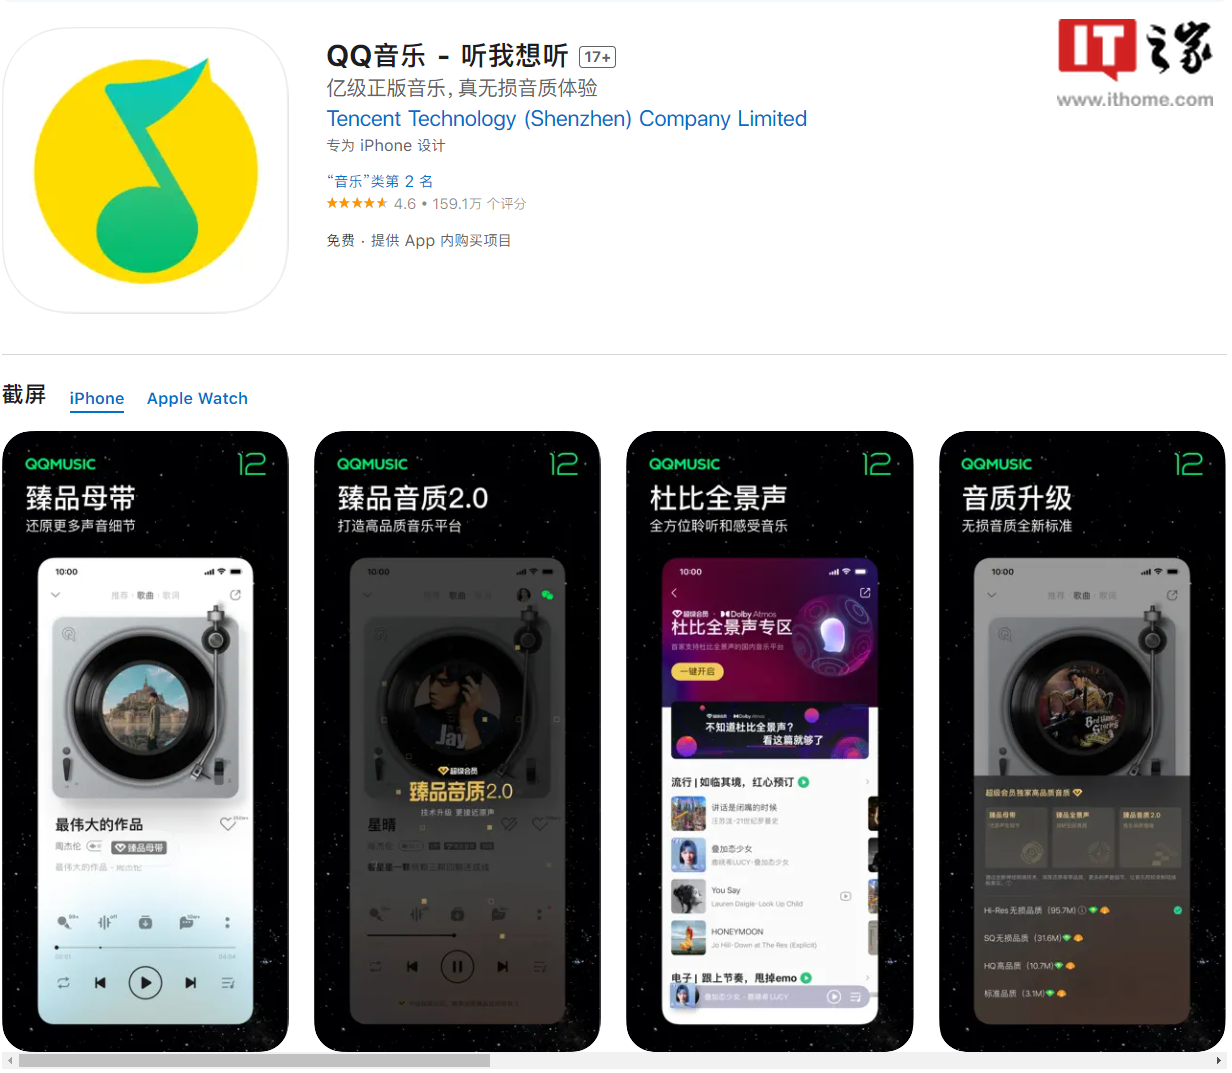 qq音乐app下载安卓版 腾讯QQ音乐iOS 安卓版121发布